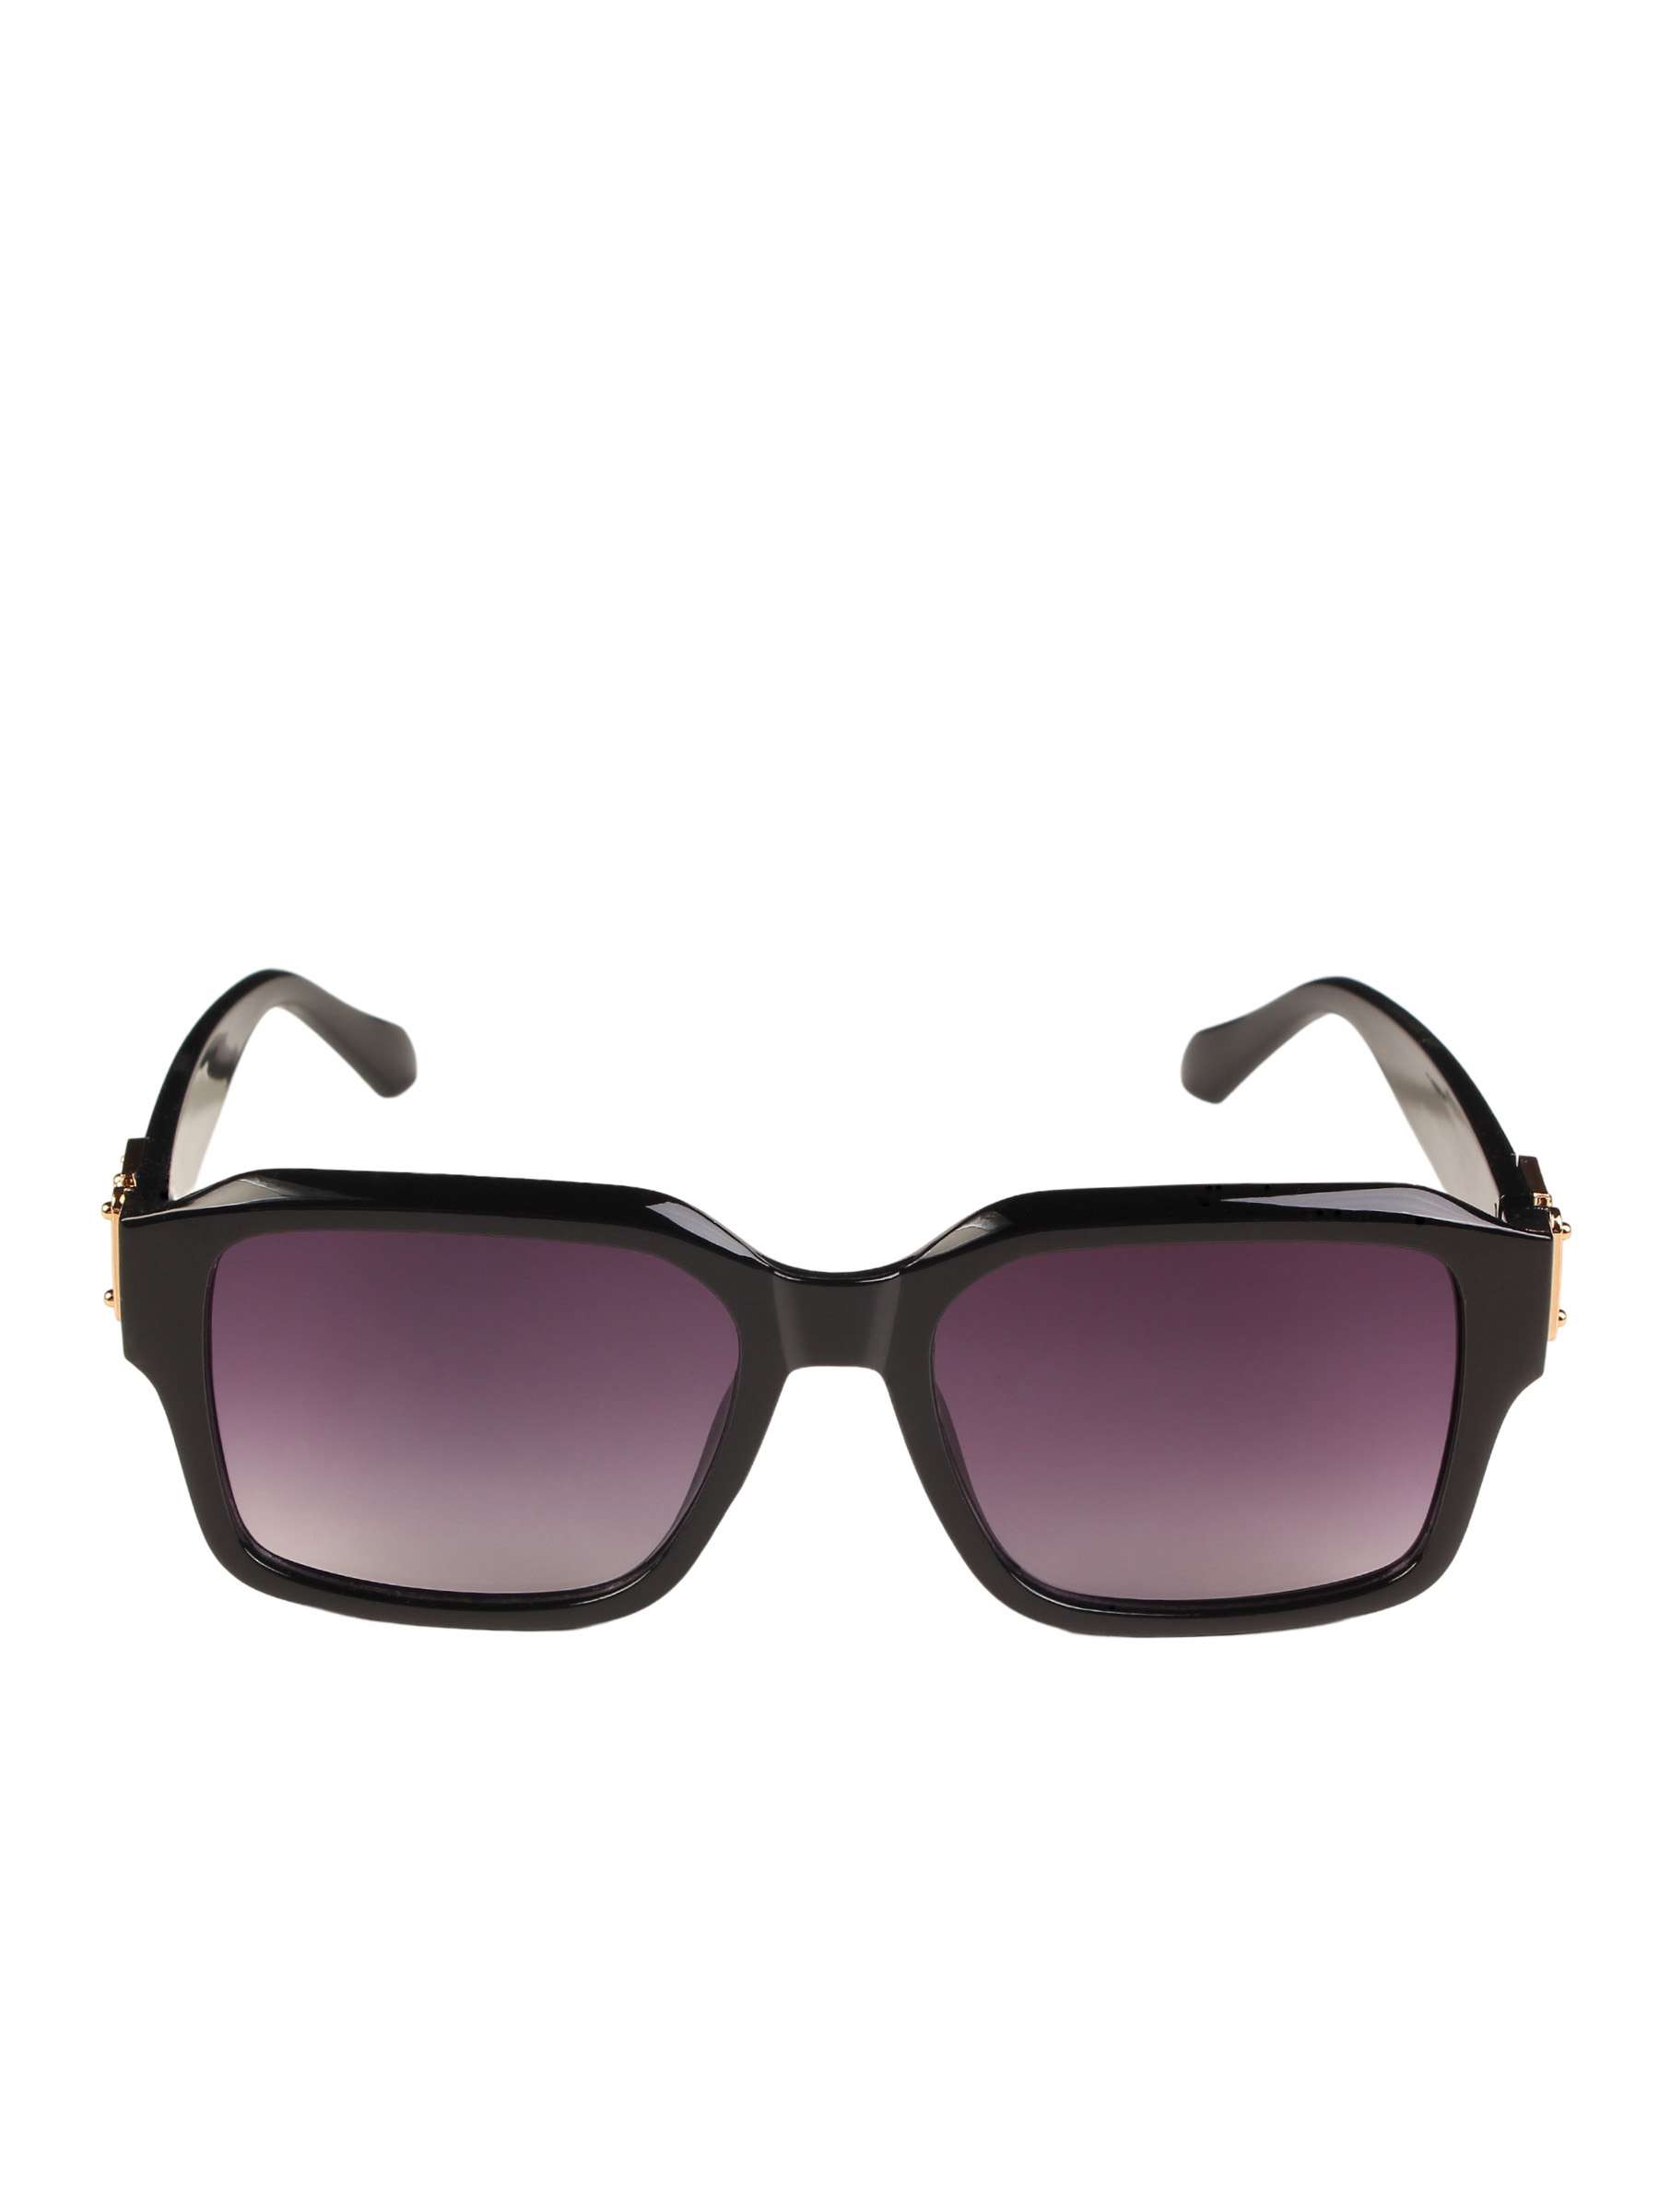 фото Солнцезащитные очки женские pretty mania dd022 черные/фиолетовые